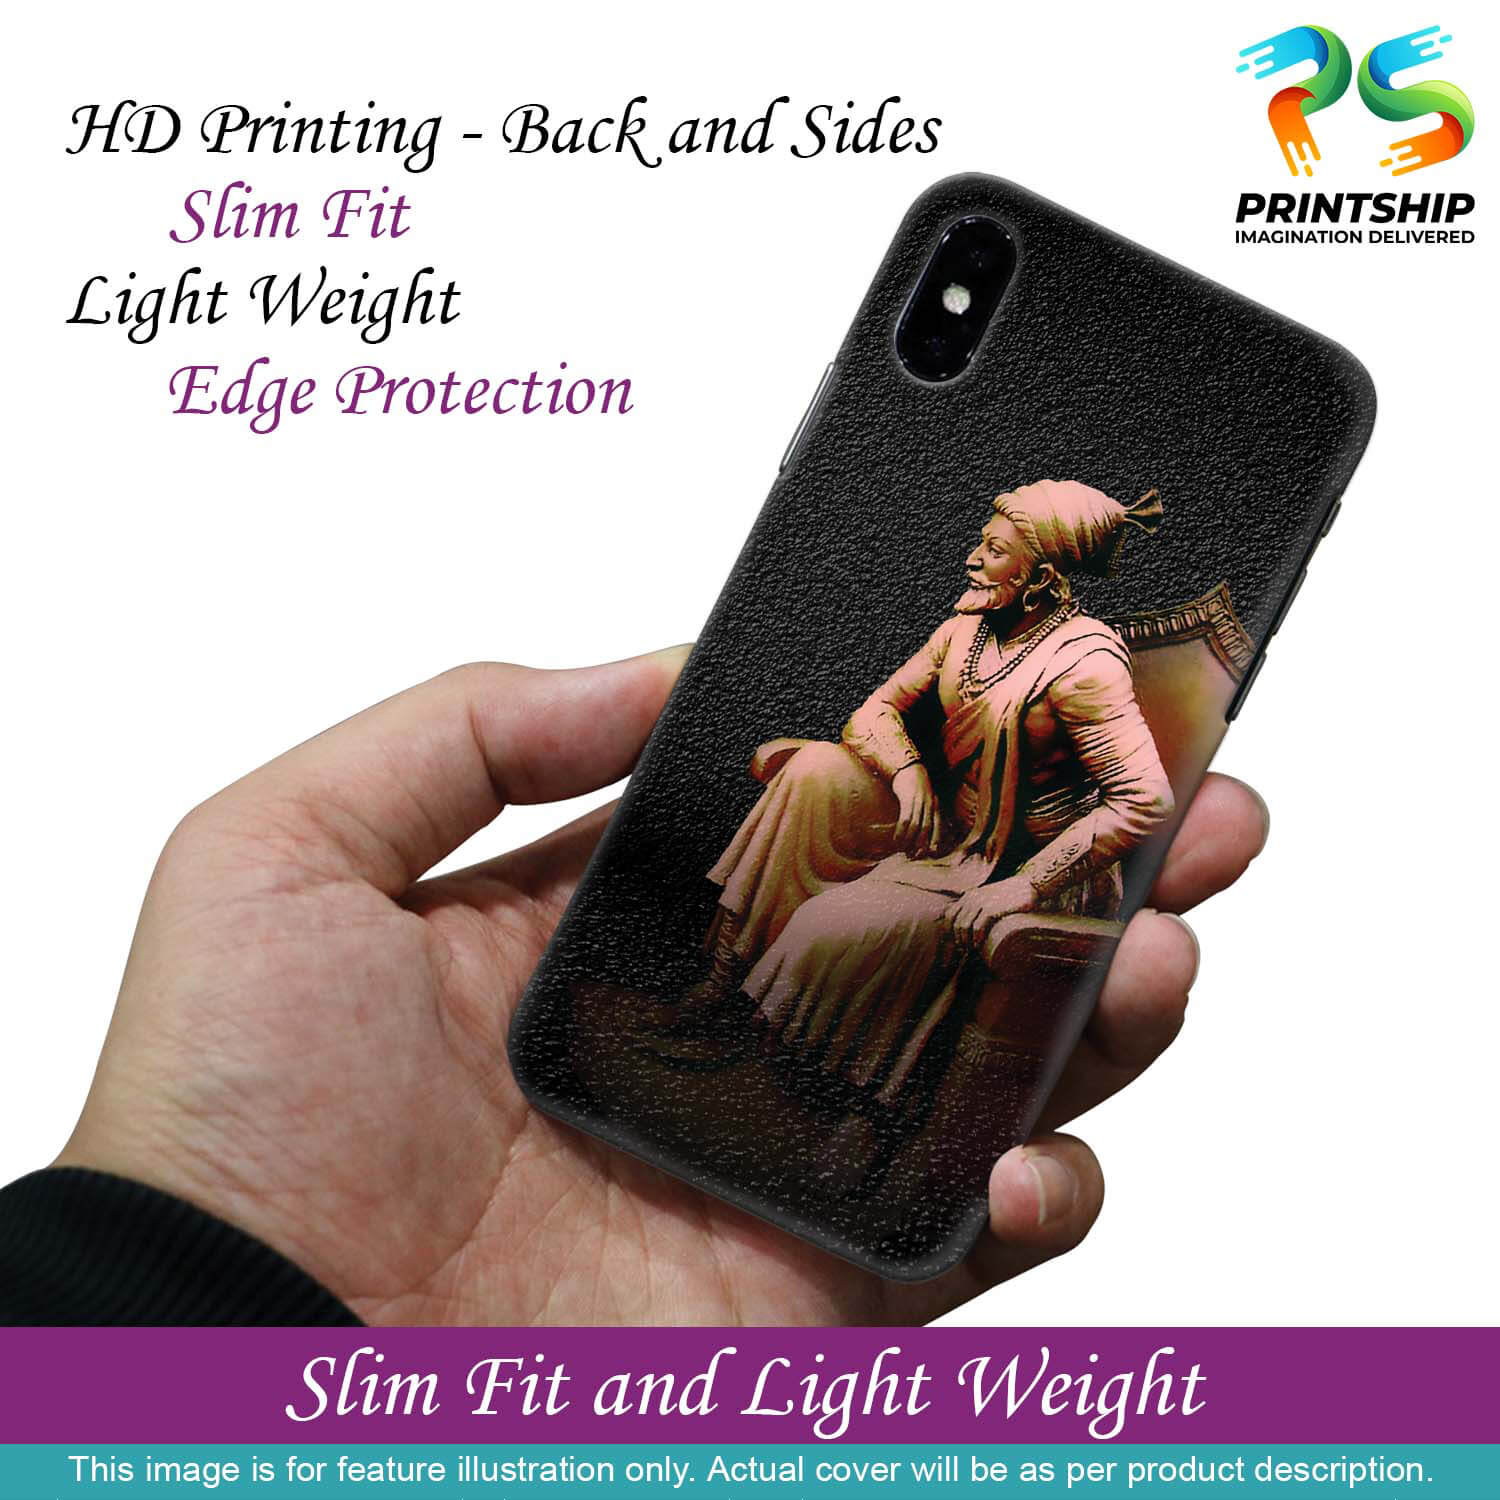 W0043-Shivaji Photo Back Cover for Xiaomi Redmi K30